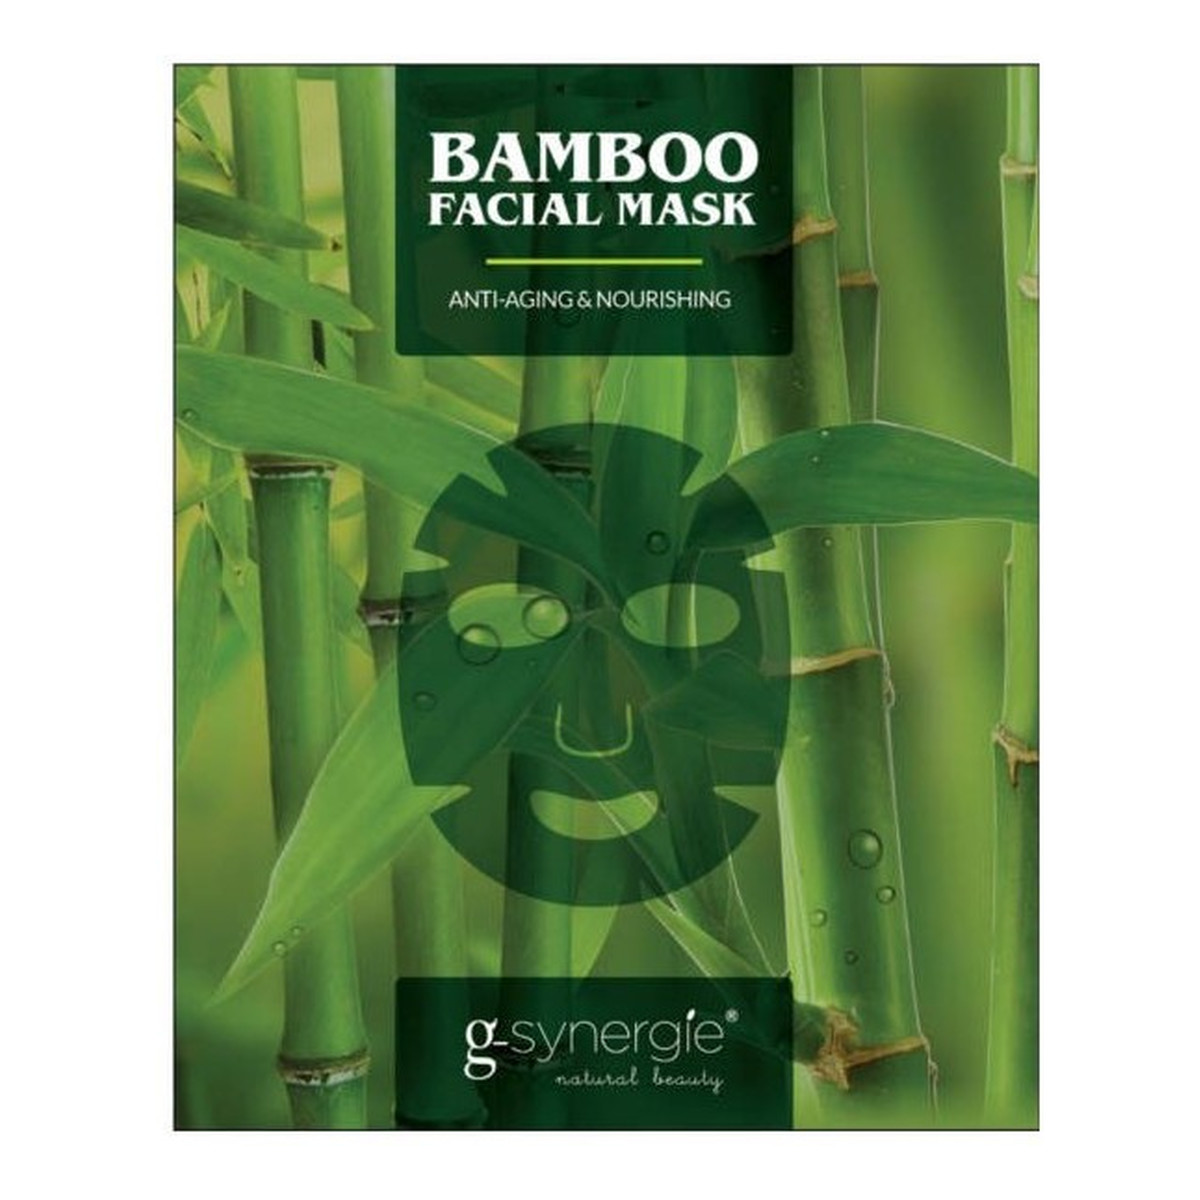 G-Synergie Bamboo maska do twarzy z ekstraktem z bambusa 7-dniowa kuracja przeciwstarzeniowo-odżywiająca 7x25ml 175ml